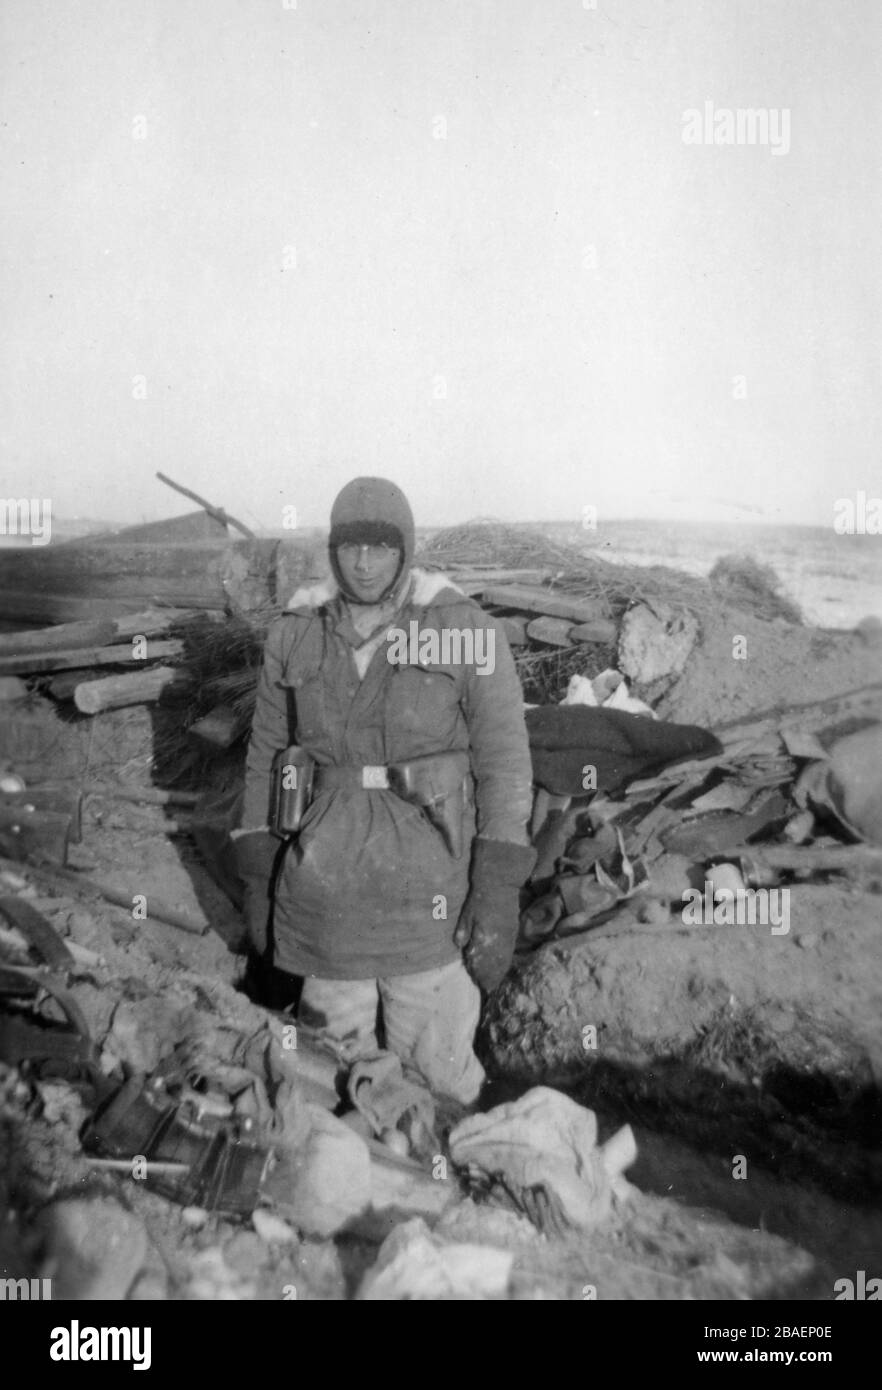 Seconda guerra mondiale / seconda guerra mondiale Foto storica sull'invasione tedesca - truppe Waffen SS in URSS (Bielorussia) - 1942 (regione di Minsk), bunker Foto Stock